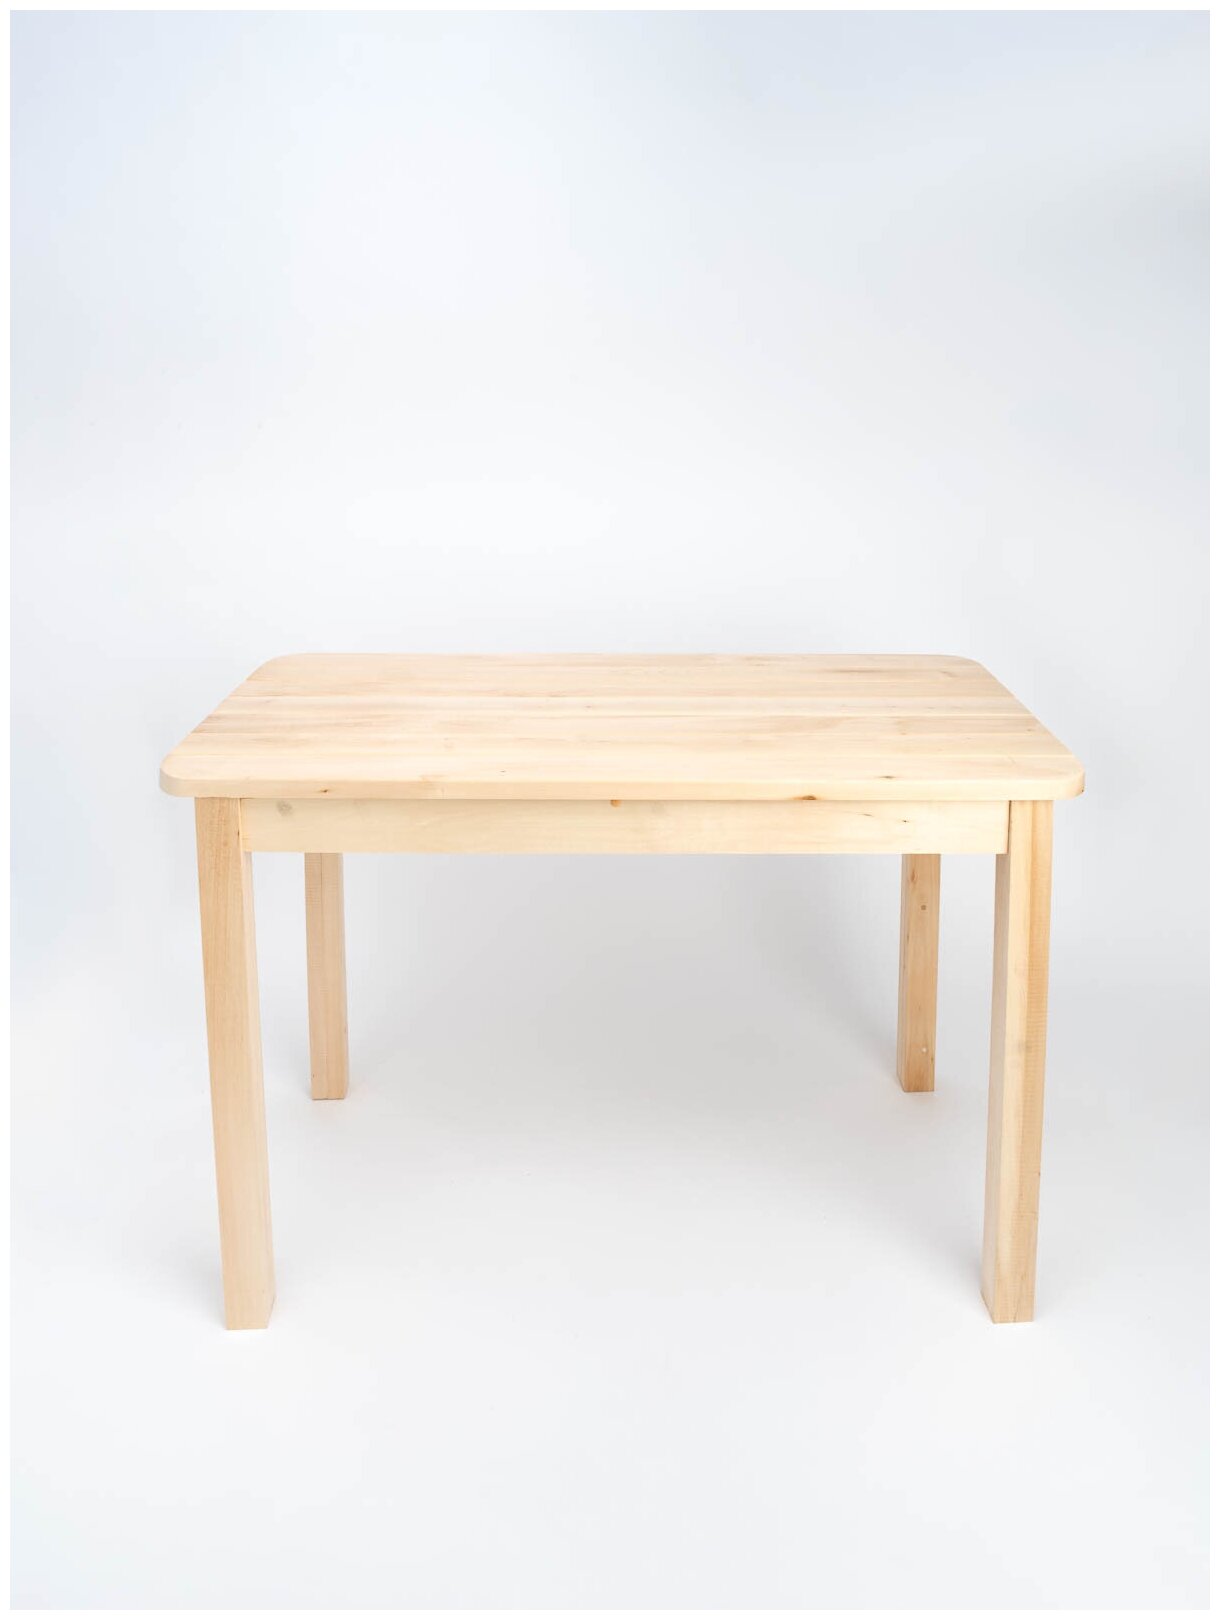 Стол прямоугольный KETT-UP ECO BIG HOLIDAY 100*60см, KU360.100, обеденный, деревянный